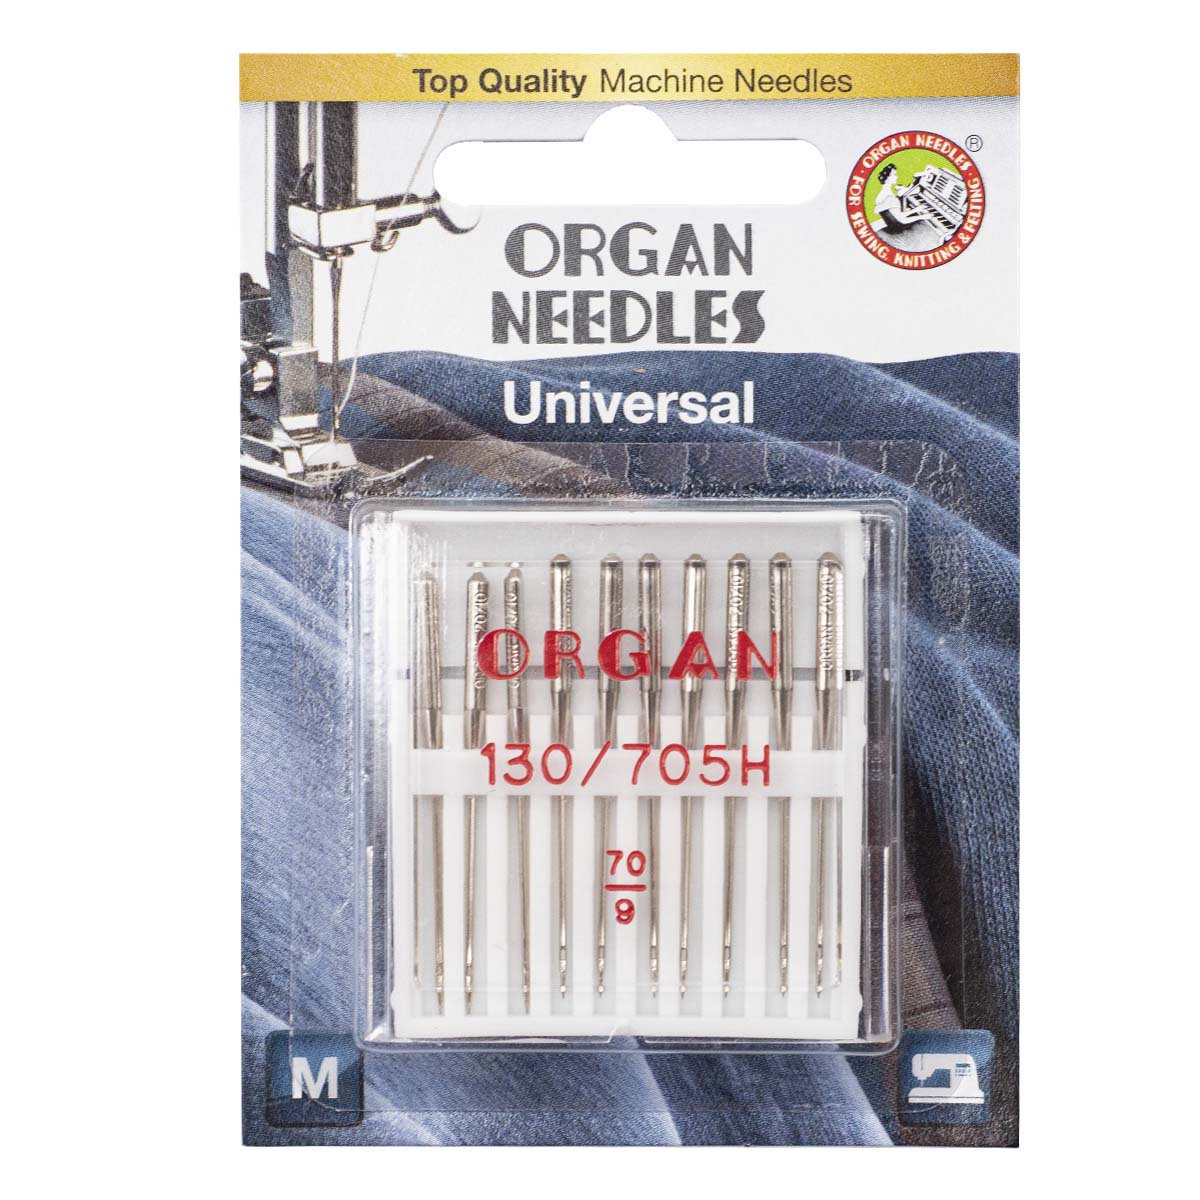 Иглы Organ универсальные 10/70 Blister иглы для бытовых швейных машин organ универсальные 110 ha 1 18 уп 5 игл мягкая уп